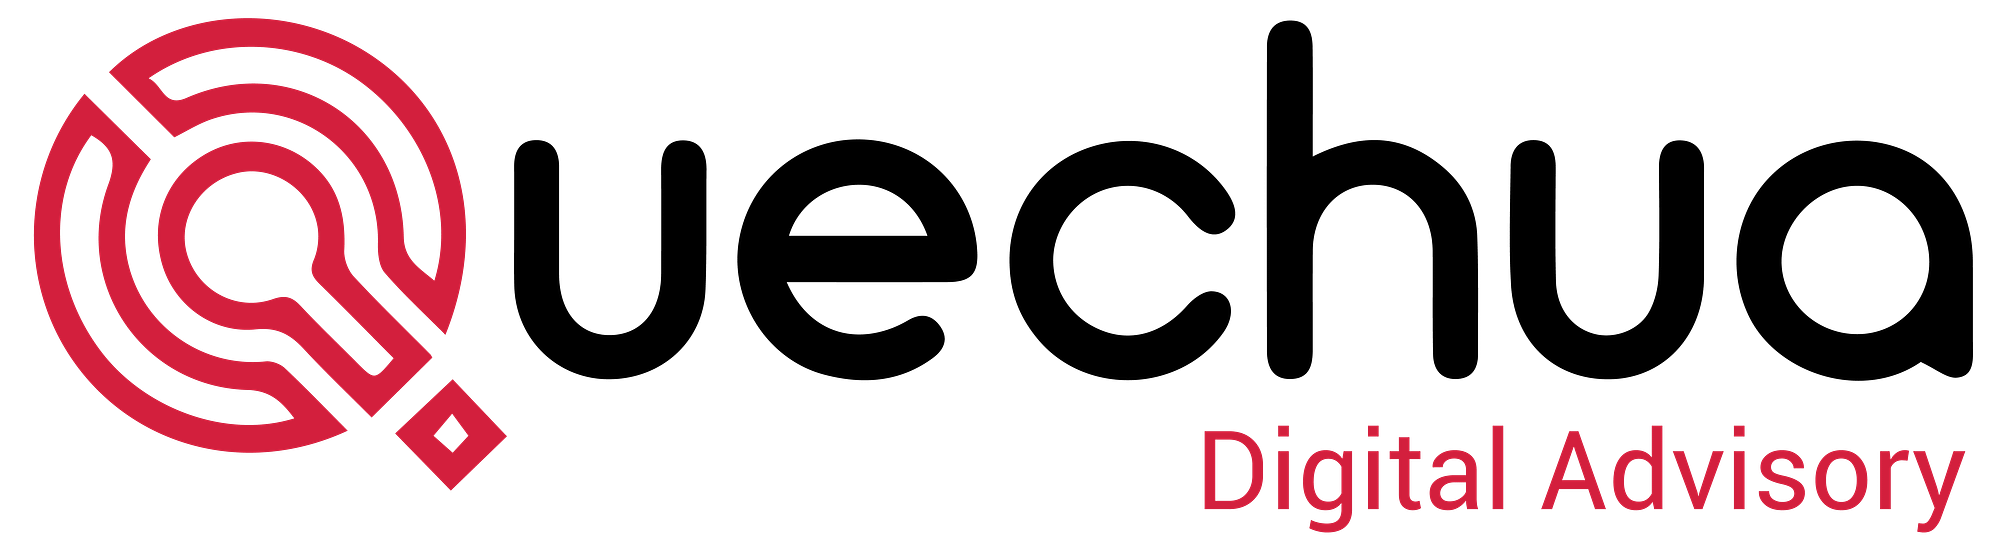 Quechua Digital Advisory Logo